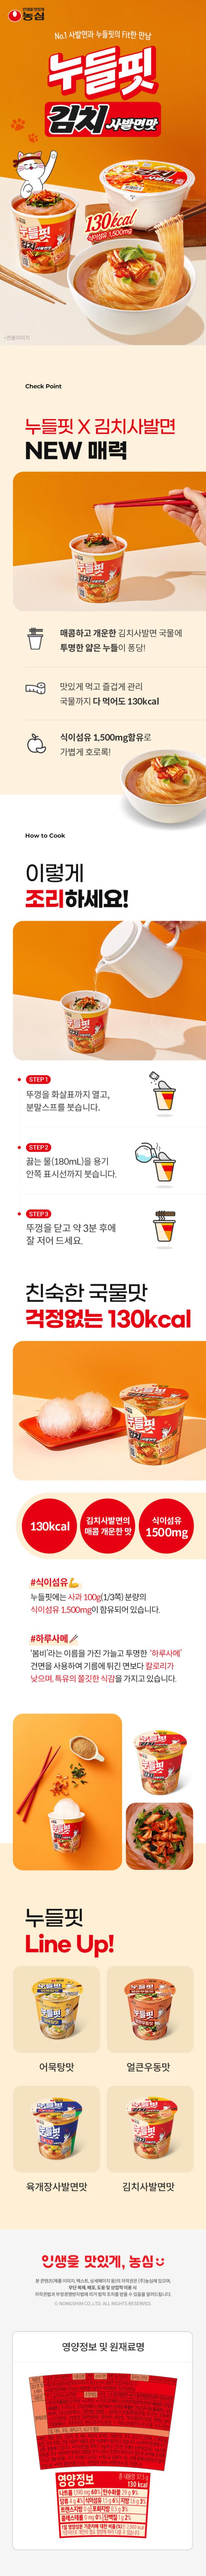 韓國食品-[Nongshim] Noodlefit (Kimchi Cup) 37.5g